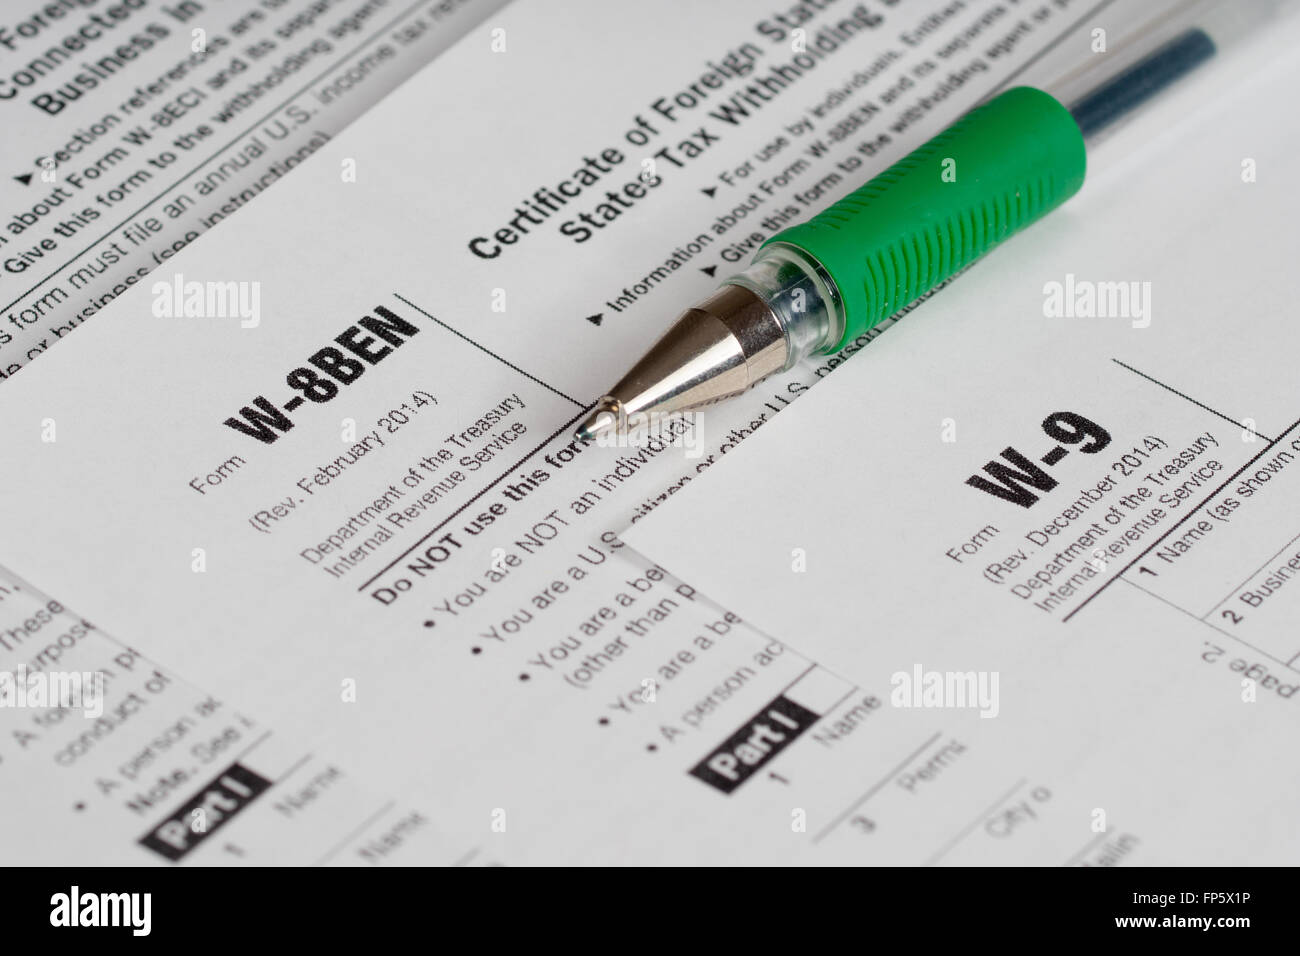 Steuererklärung Formulare mit geöffneten grünen Stift Stockfoto